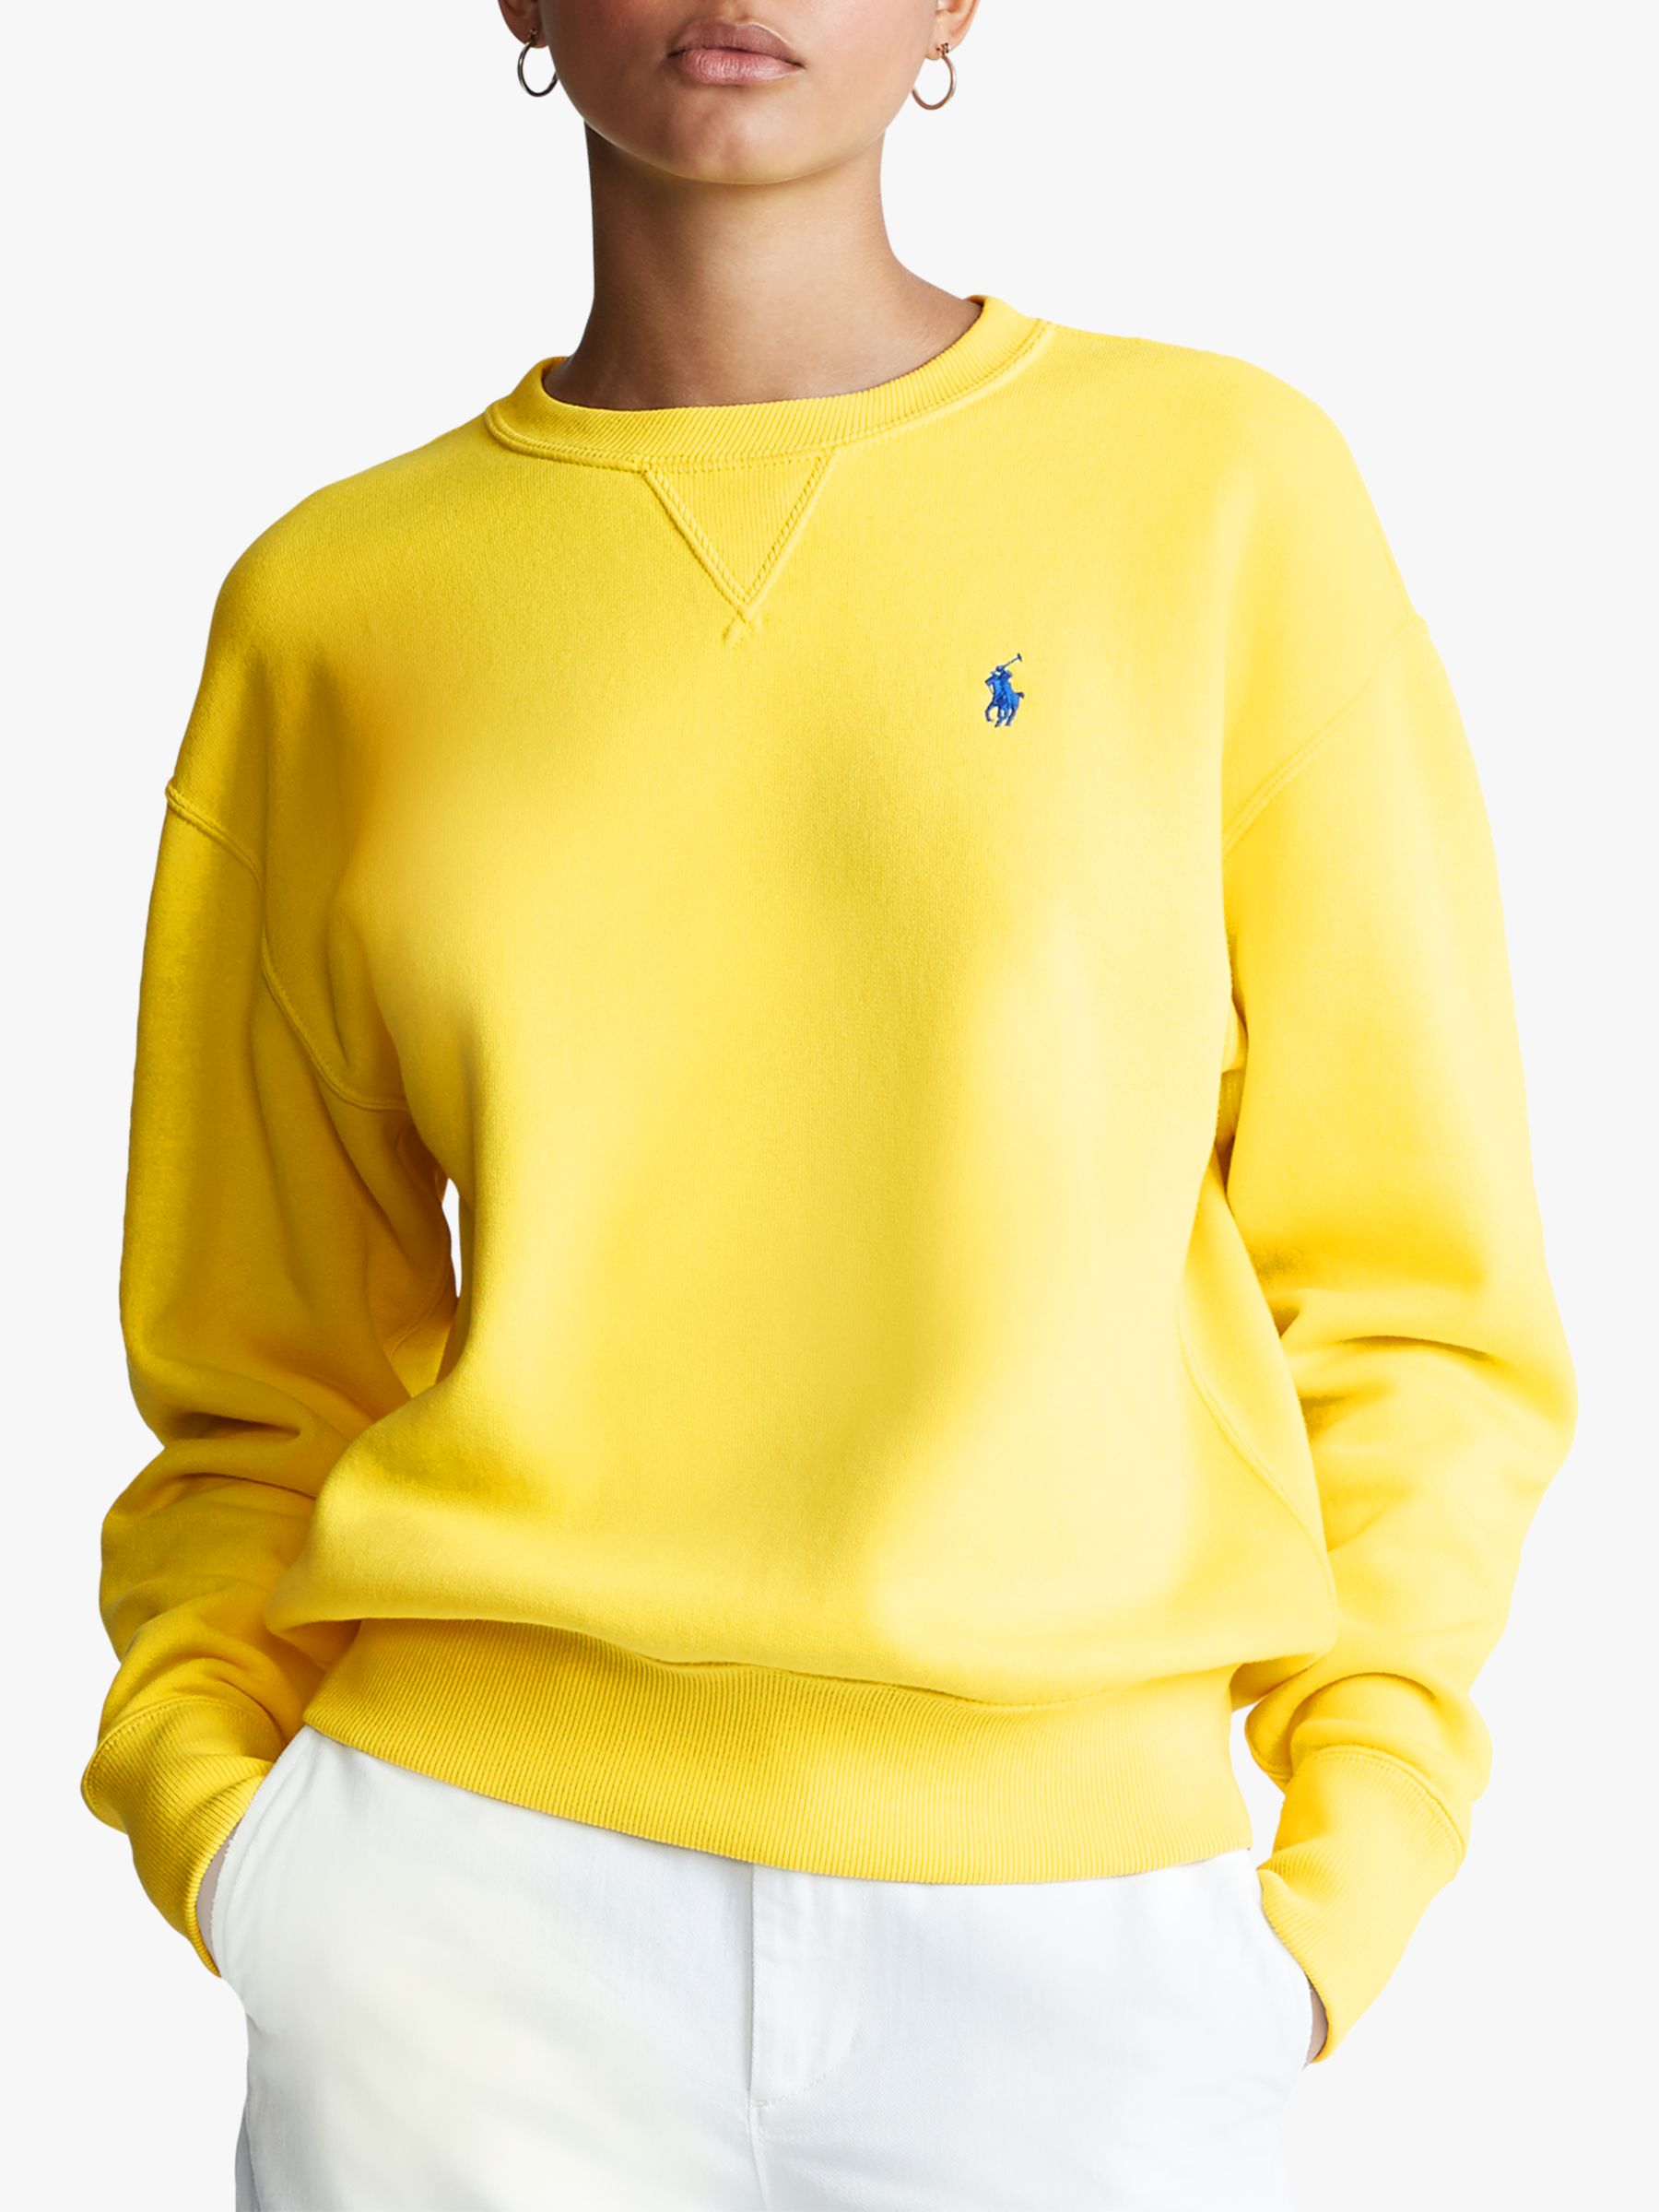 yellow ralph lauren sweatshirt